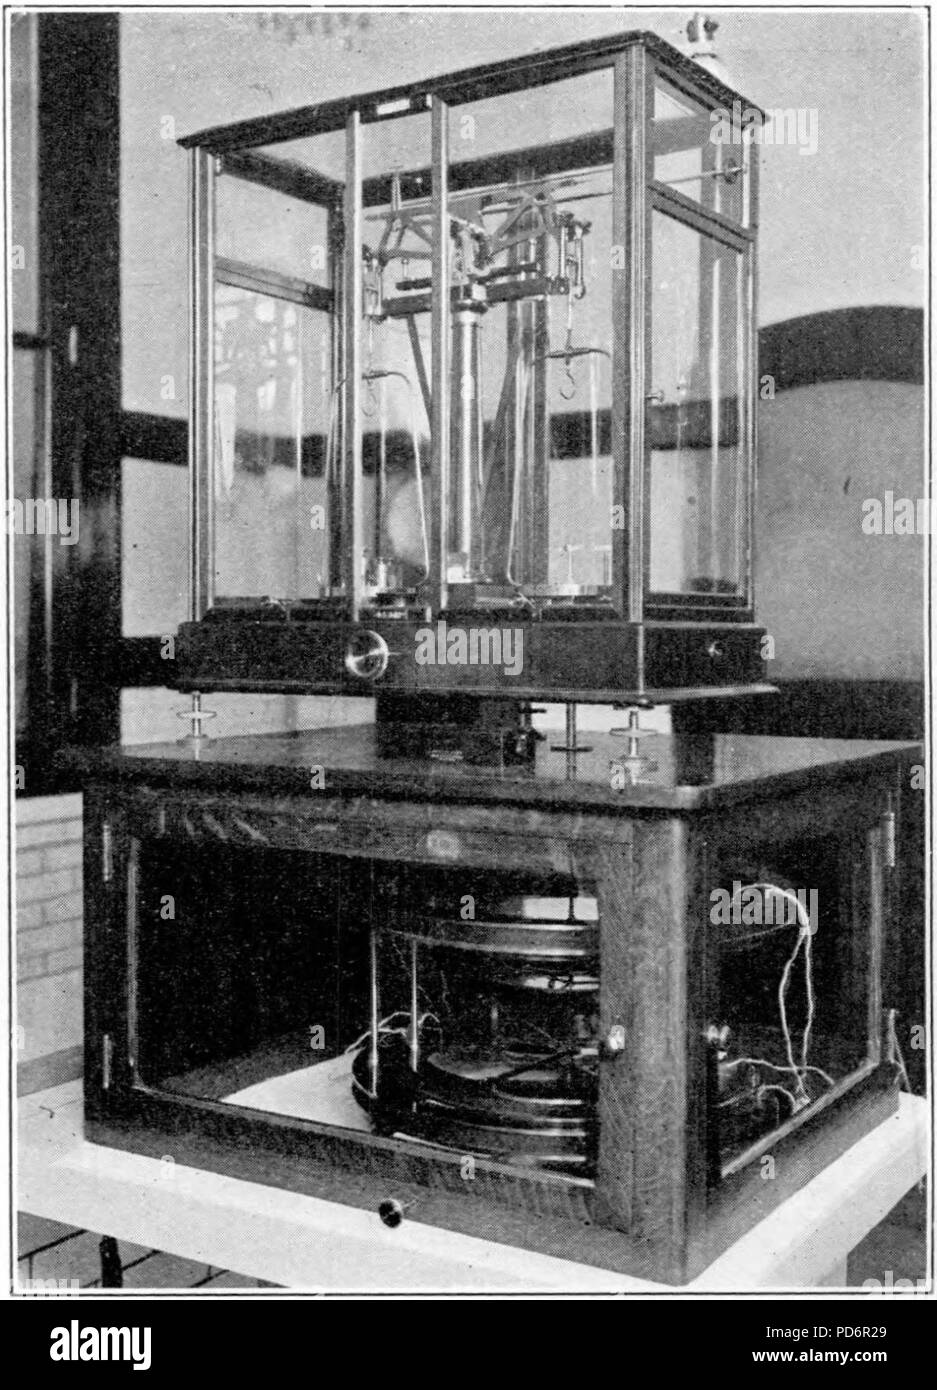 Ampere balance 1927. Stock Photo